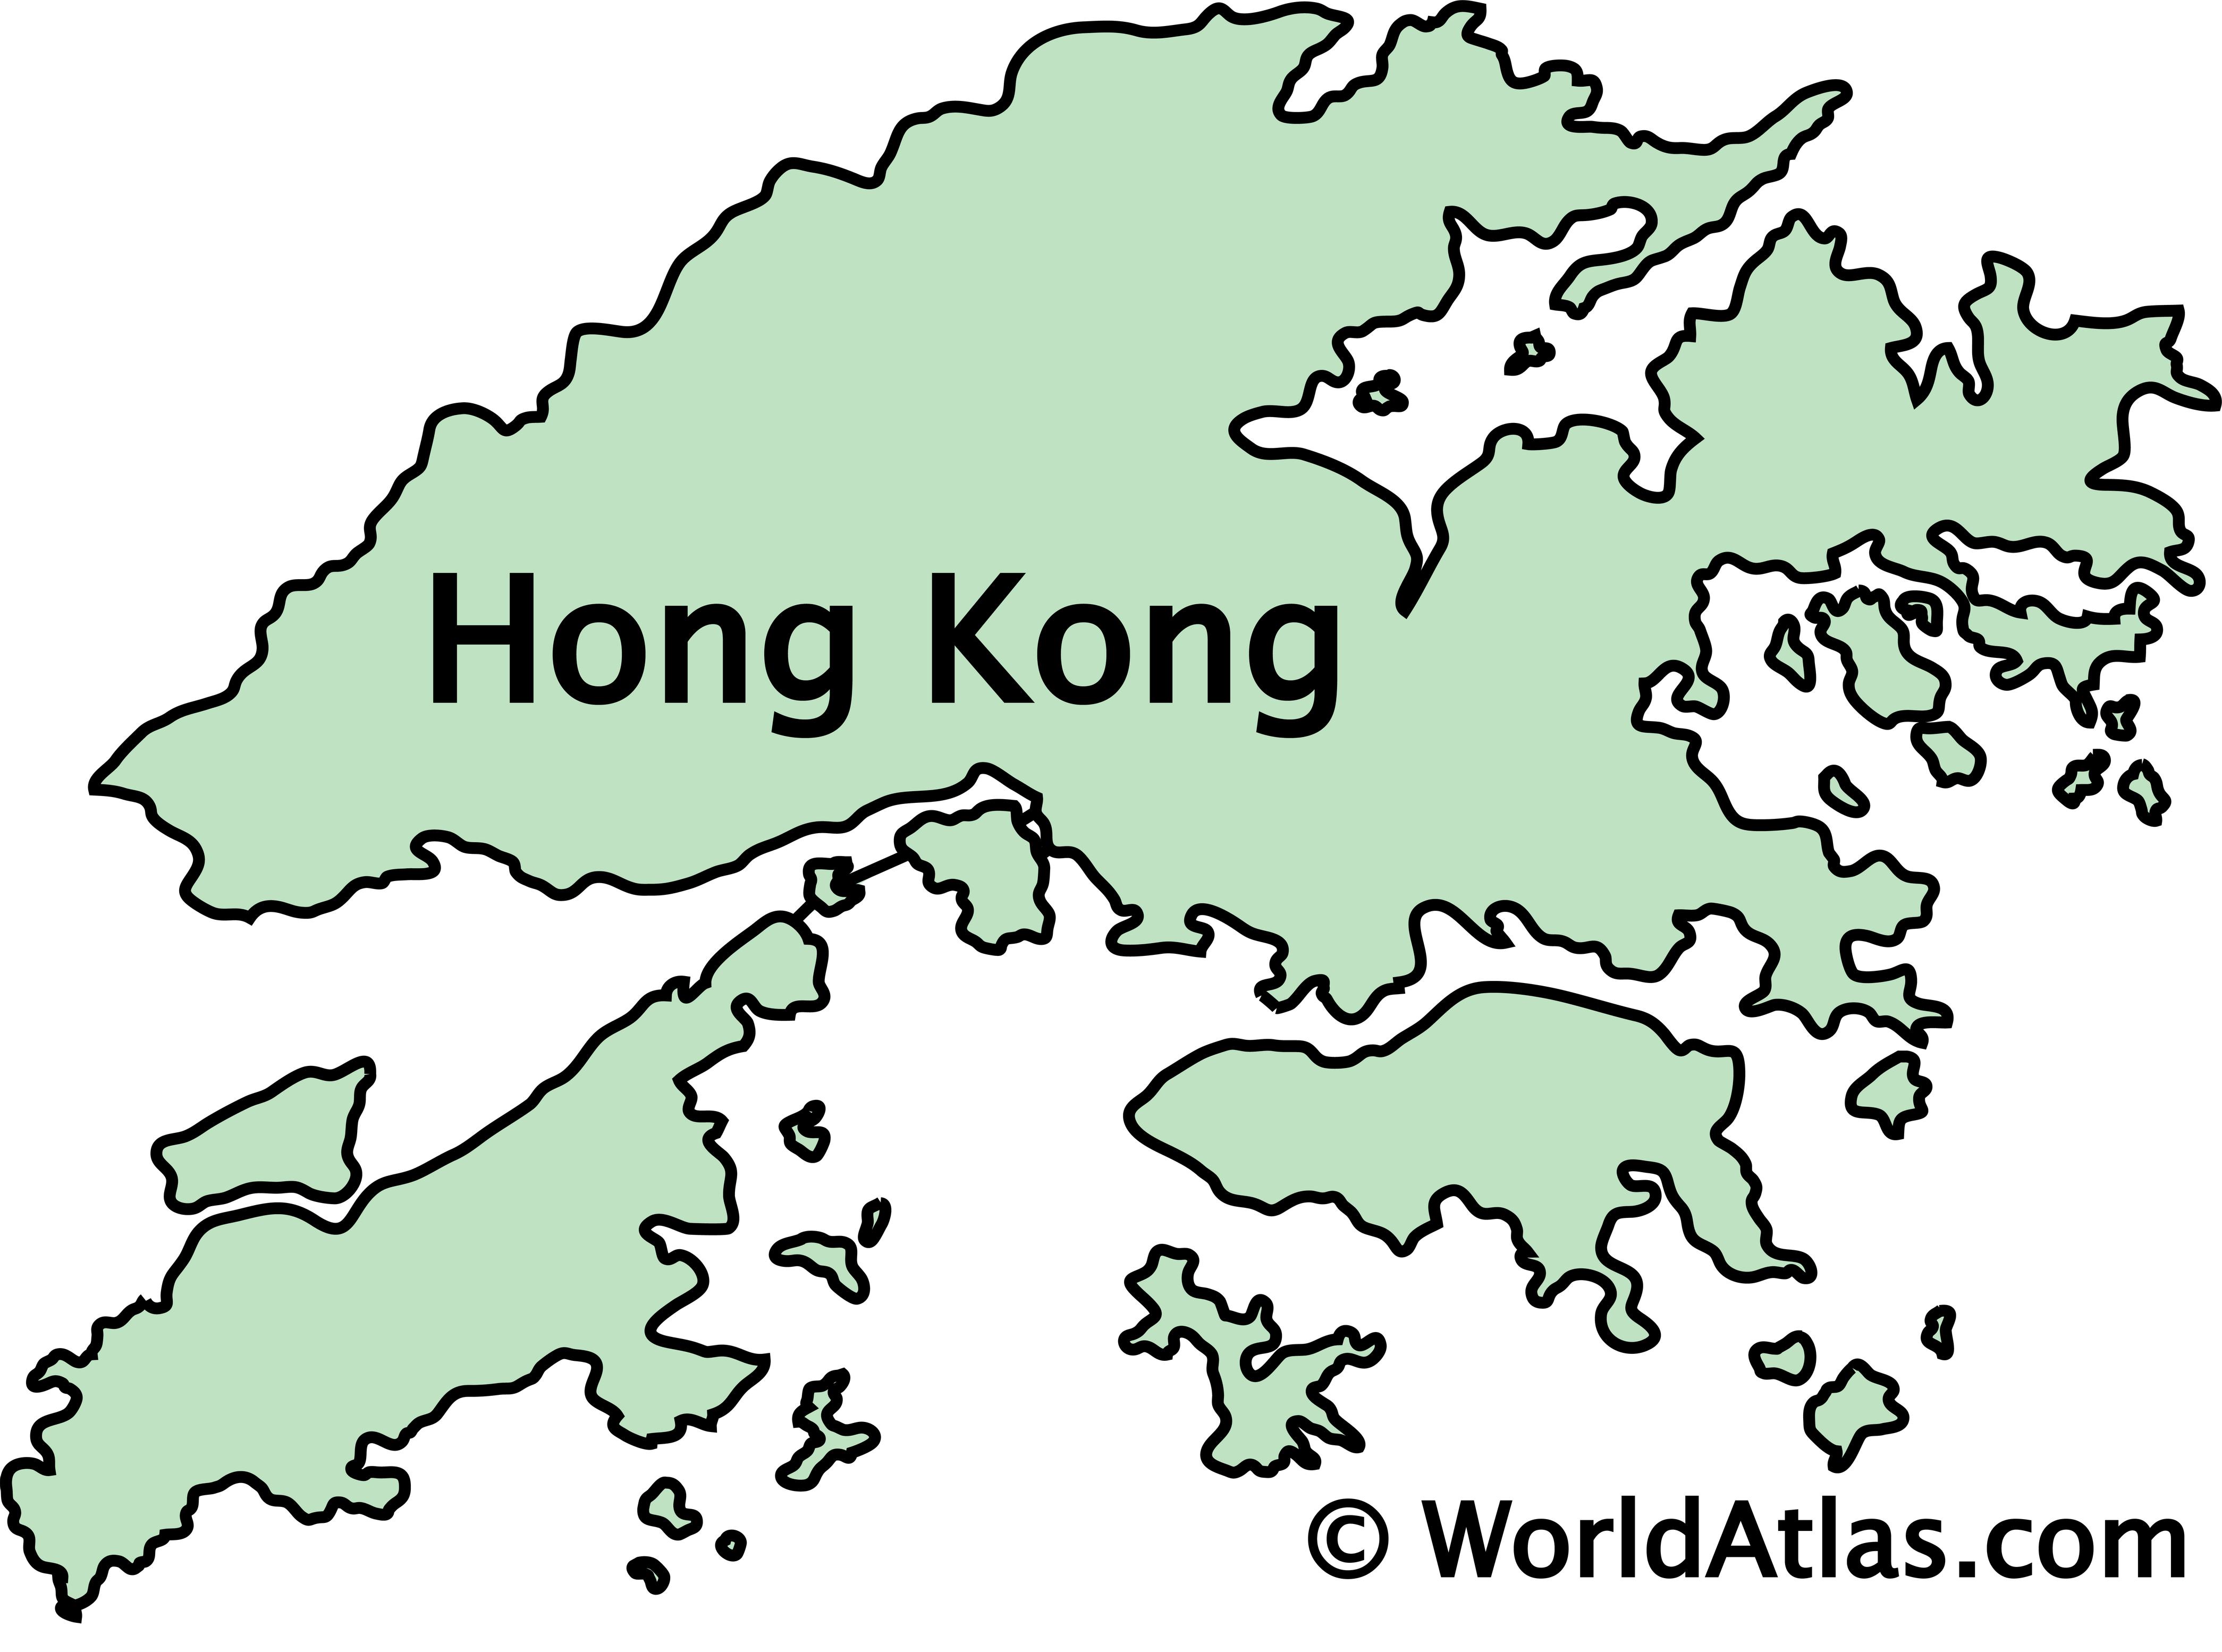 гонконг это какая страна на карте мира